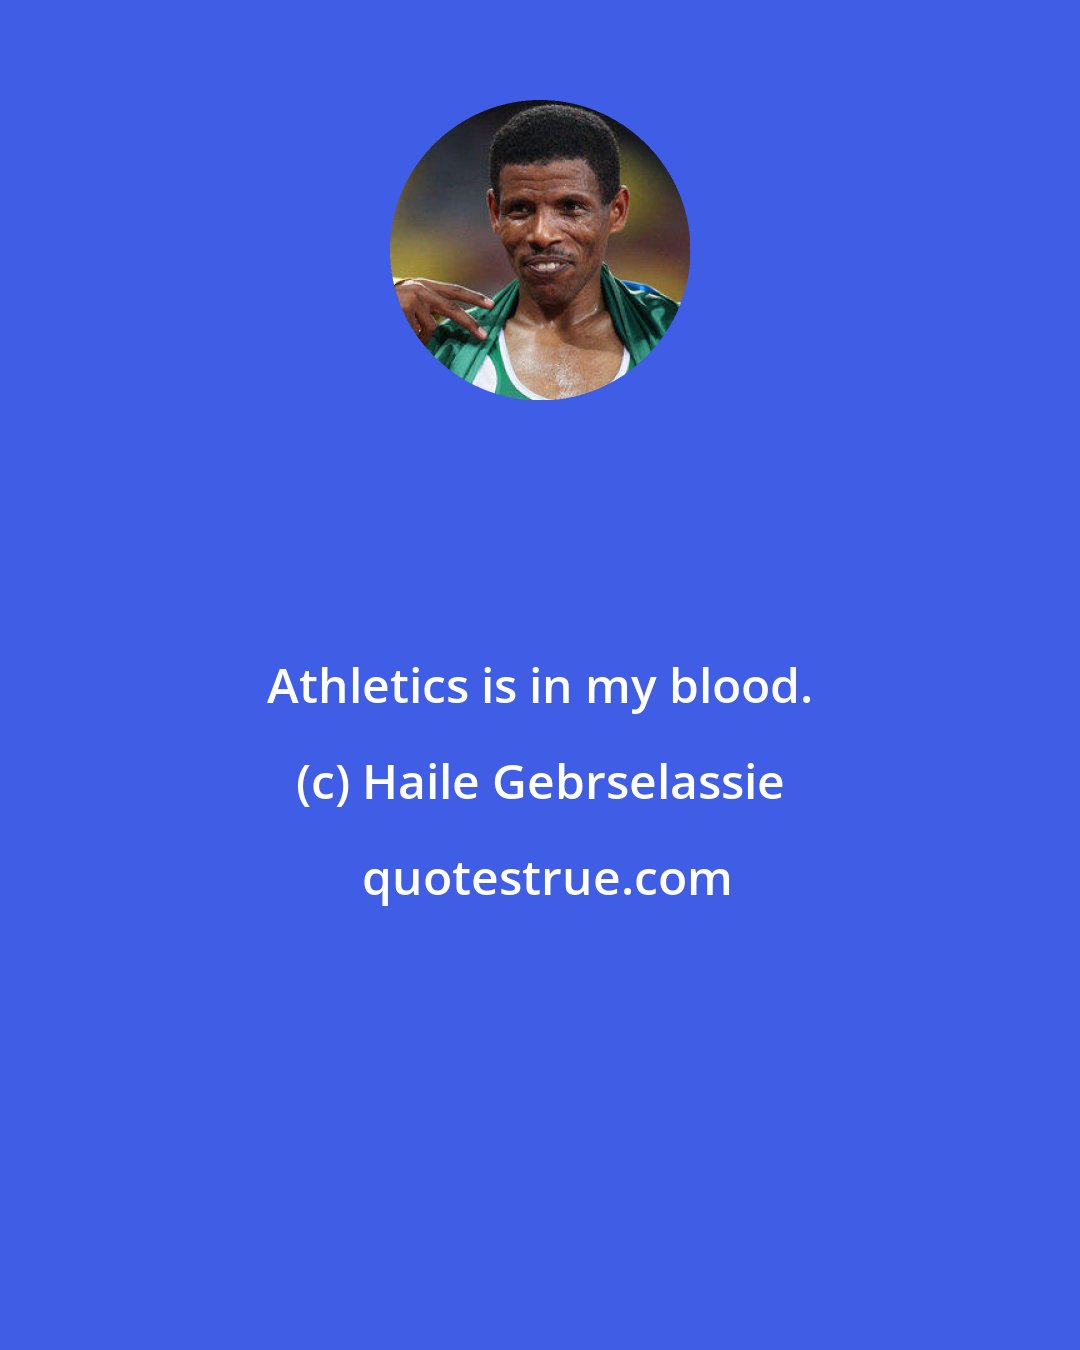 Haile Gebrselassie: Athletics is in my blood.